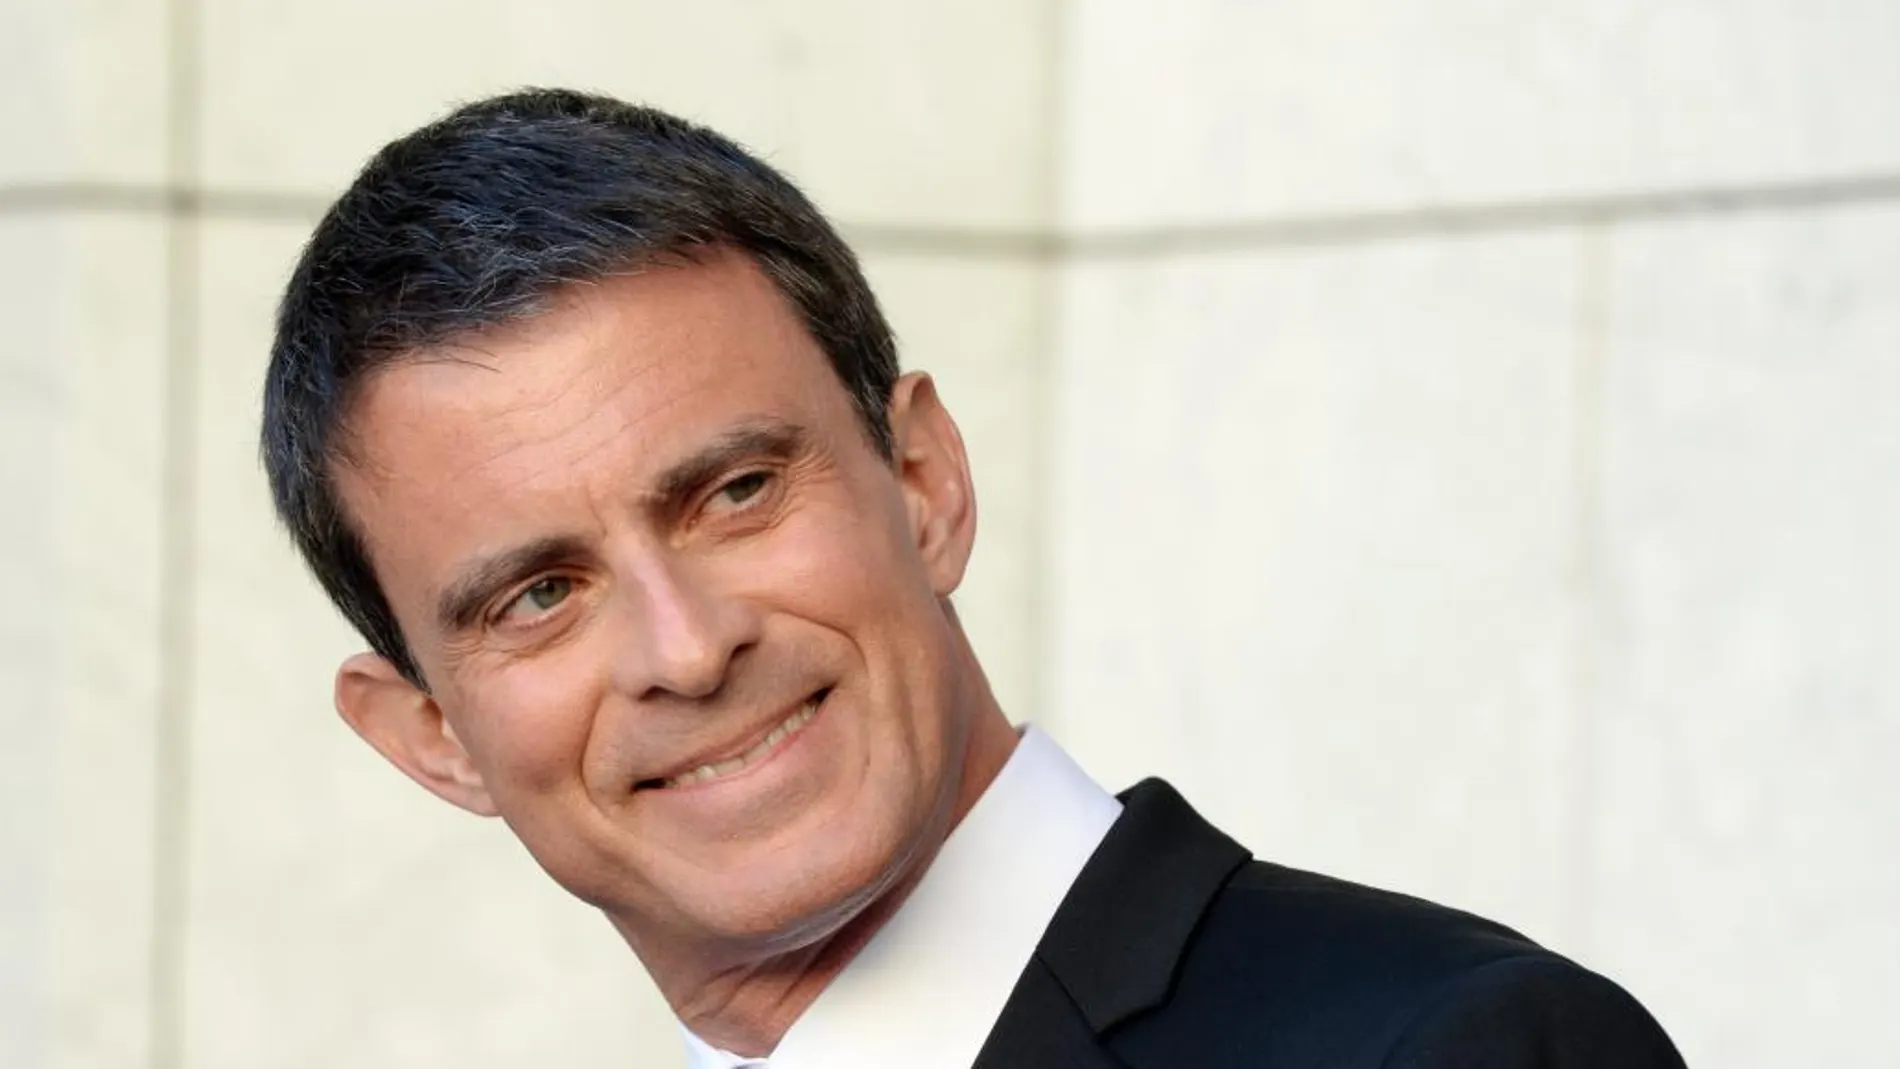 El primer ministro francés, Manuel Valls, ayer en Canberra, Australia